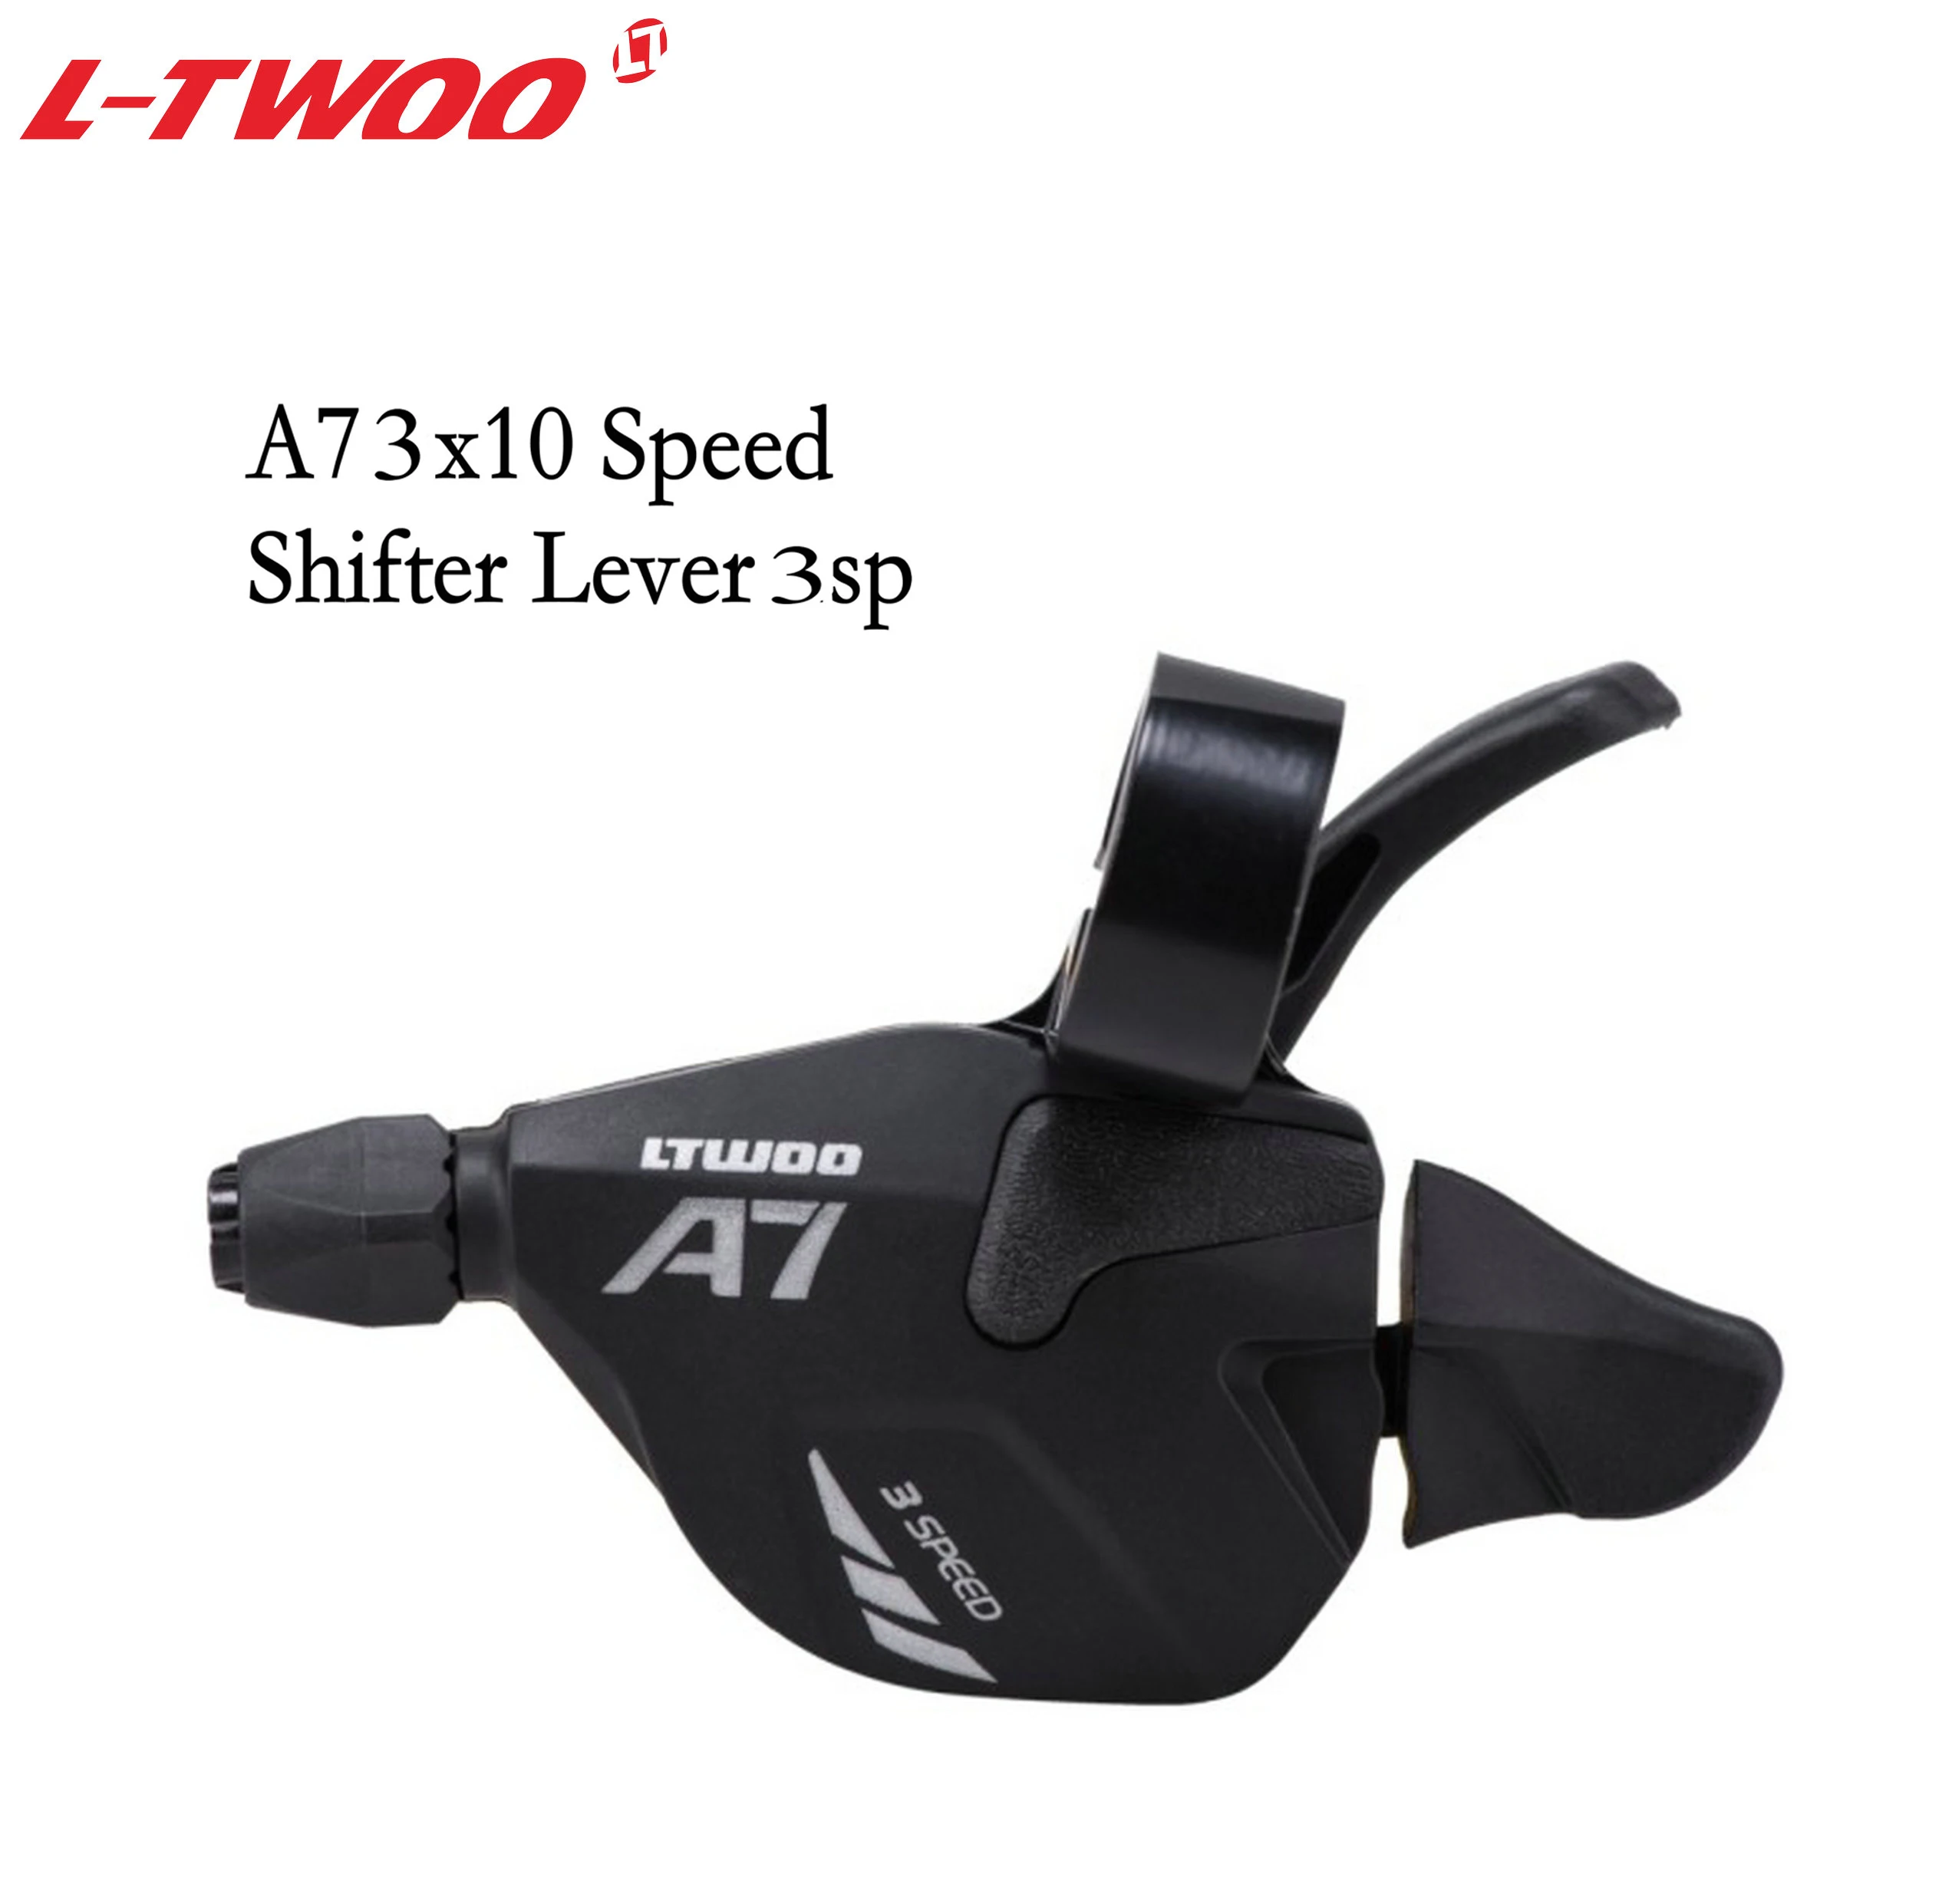 LTWOO велосипед A7 2X10 3X10 скоростной триггерный переключатель передач рычаг для MTB велосипеда 10-скоростные кассетные звездочки 42T 46T 50T